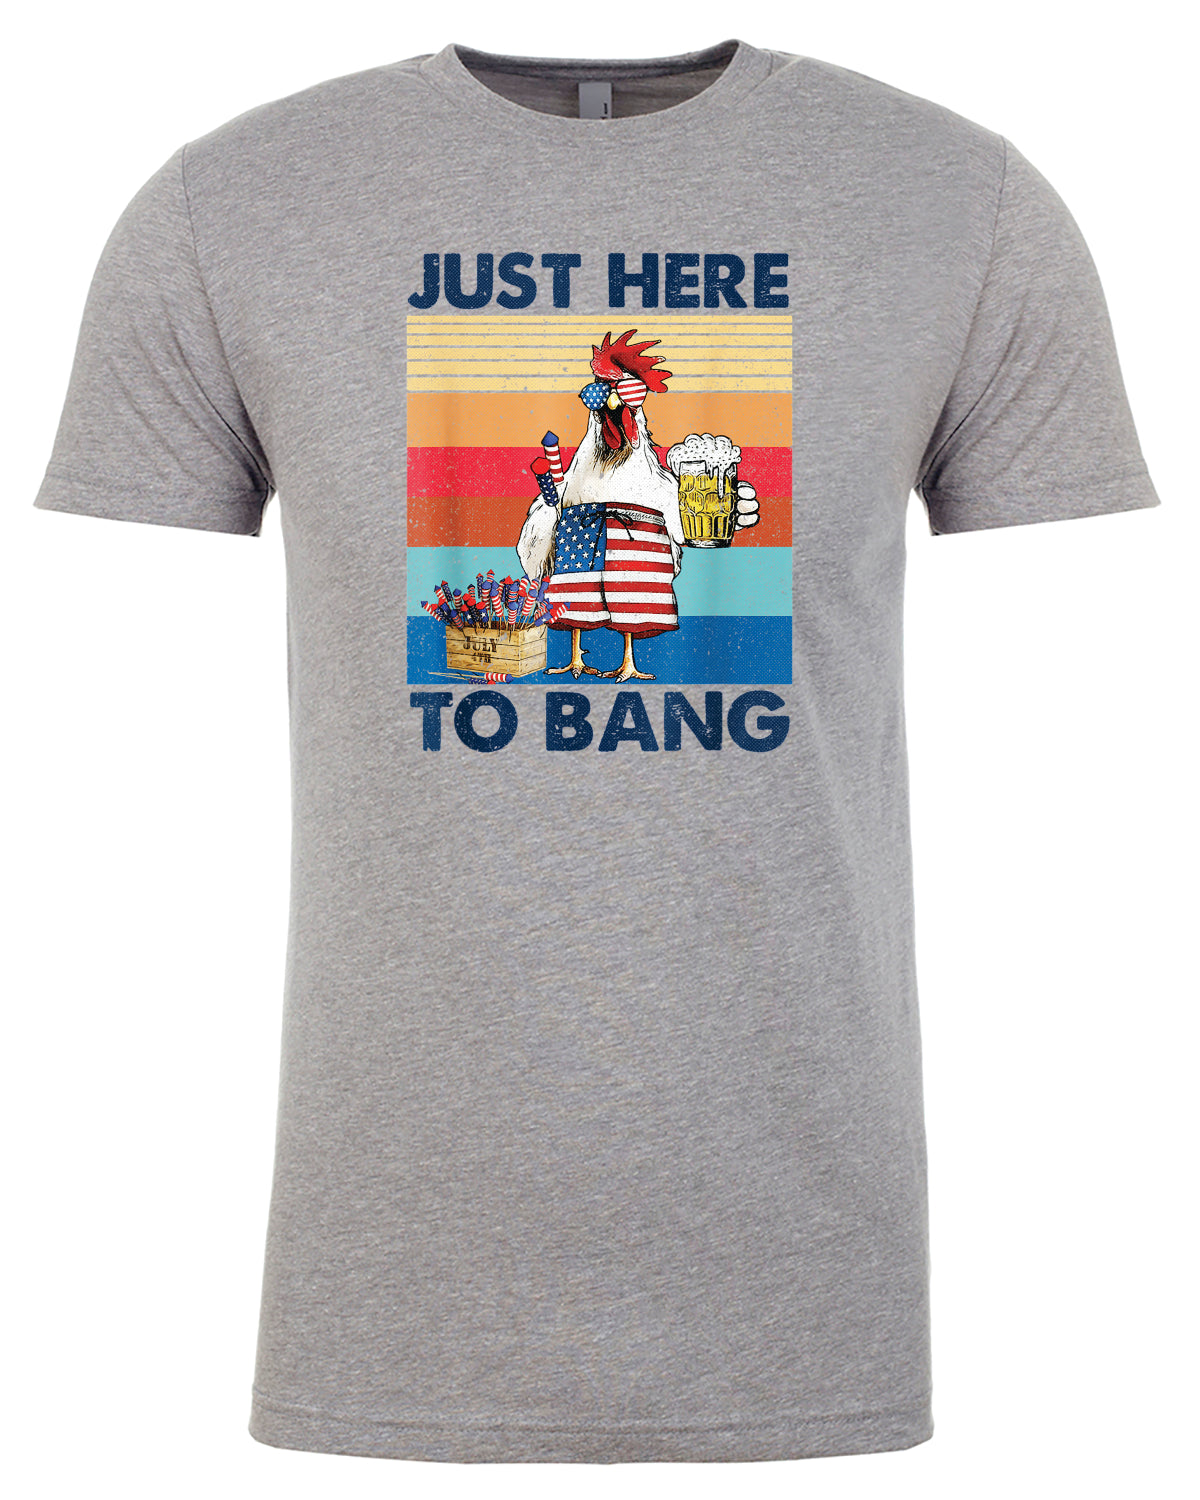 Here to Bang T-shirt